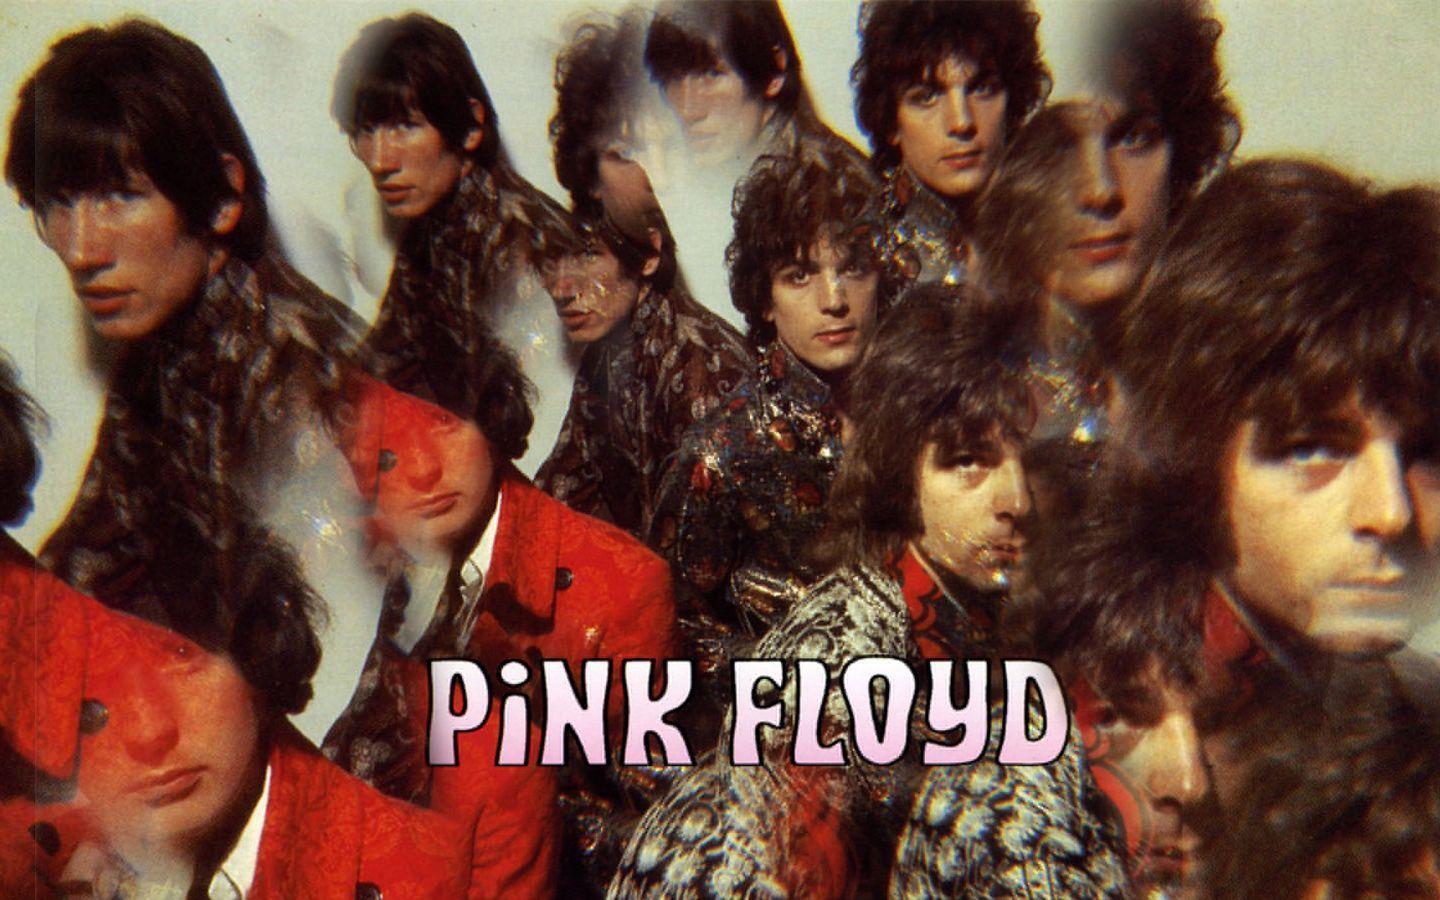 Free Old School Pink Floyd Wallpapers, Free Old School Pink Floyd